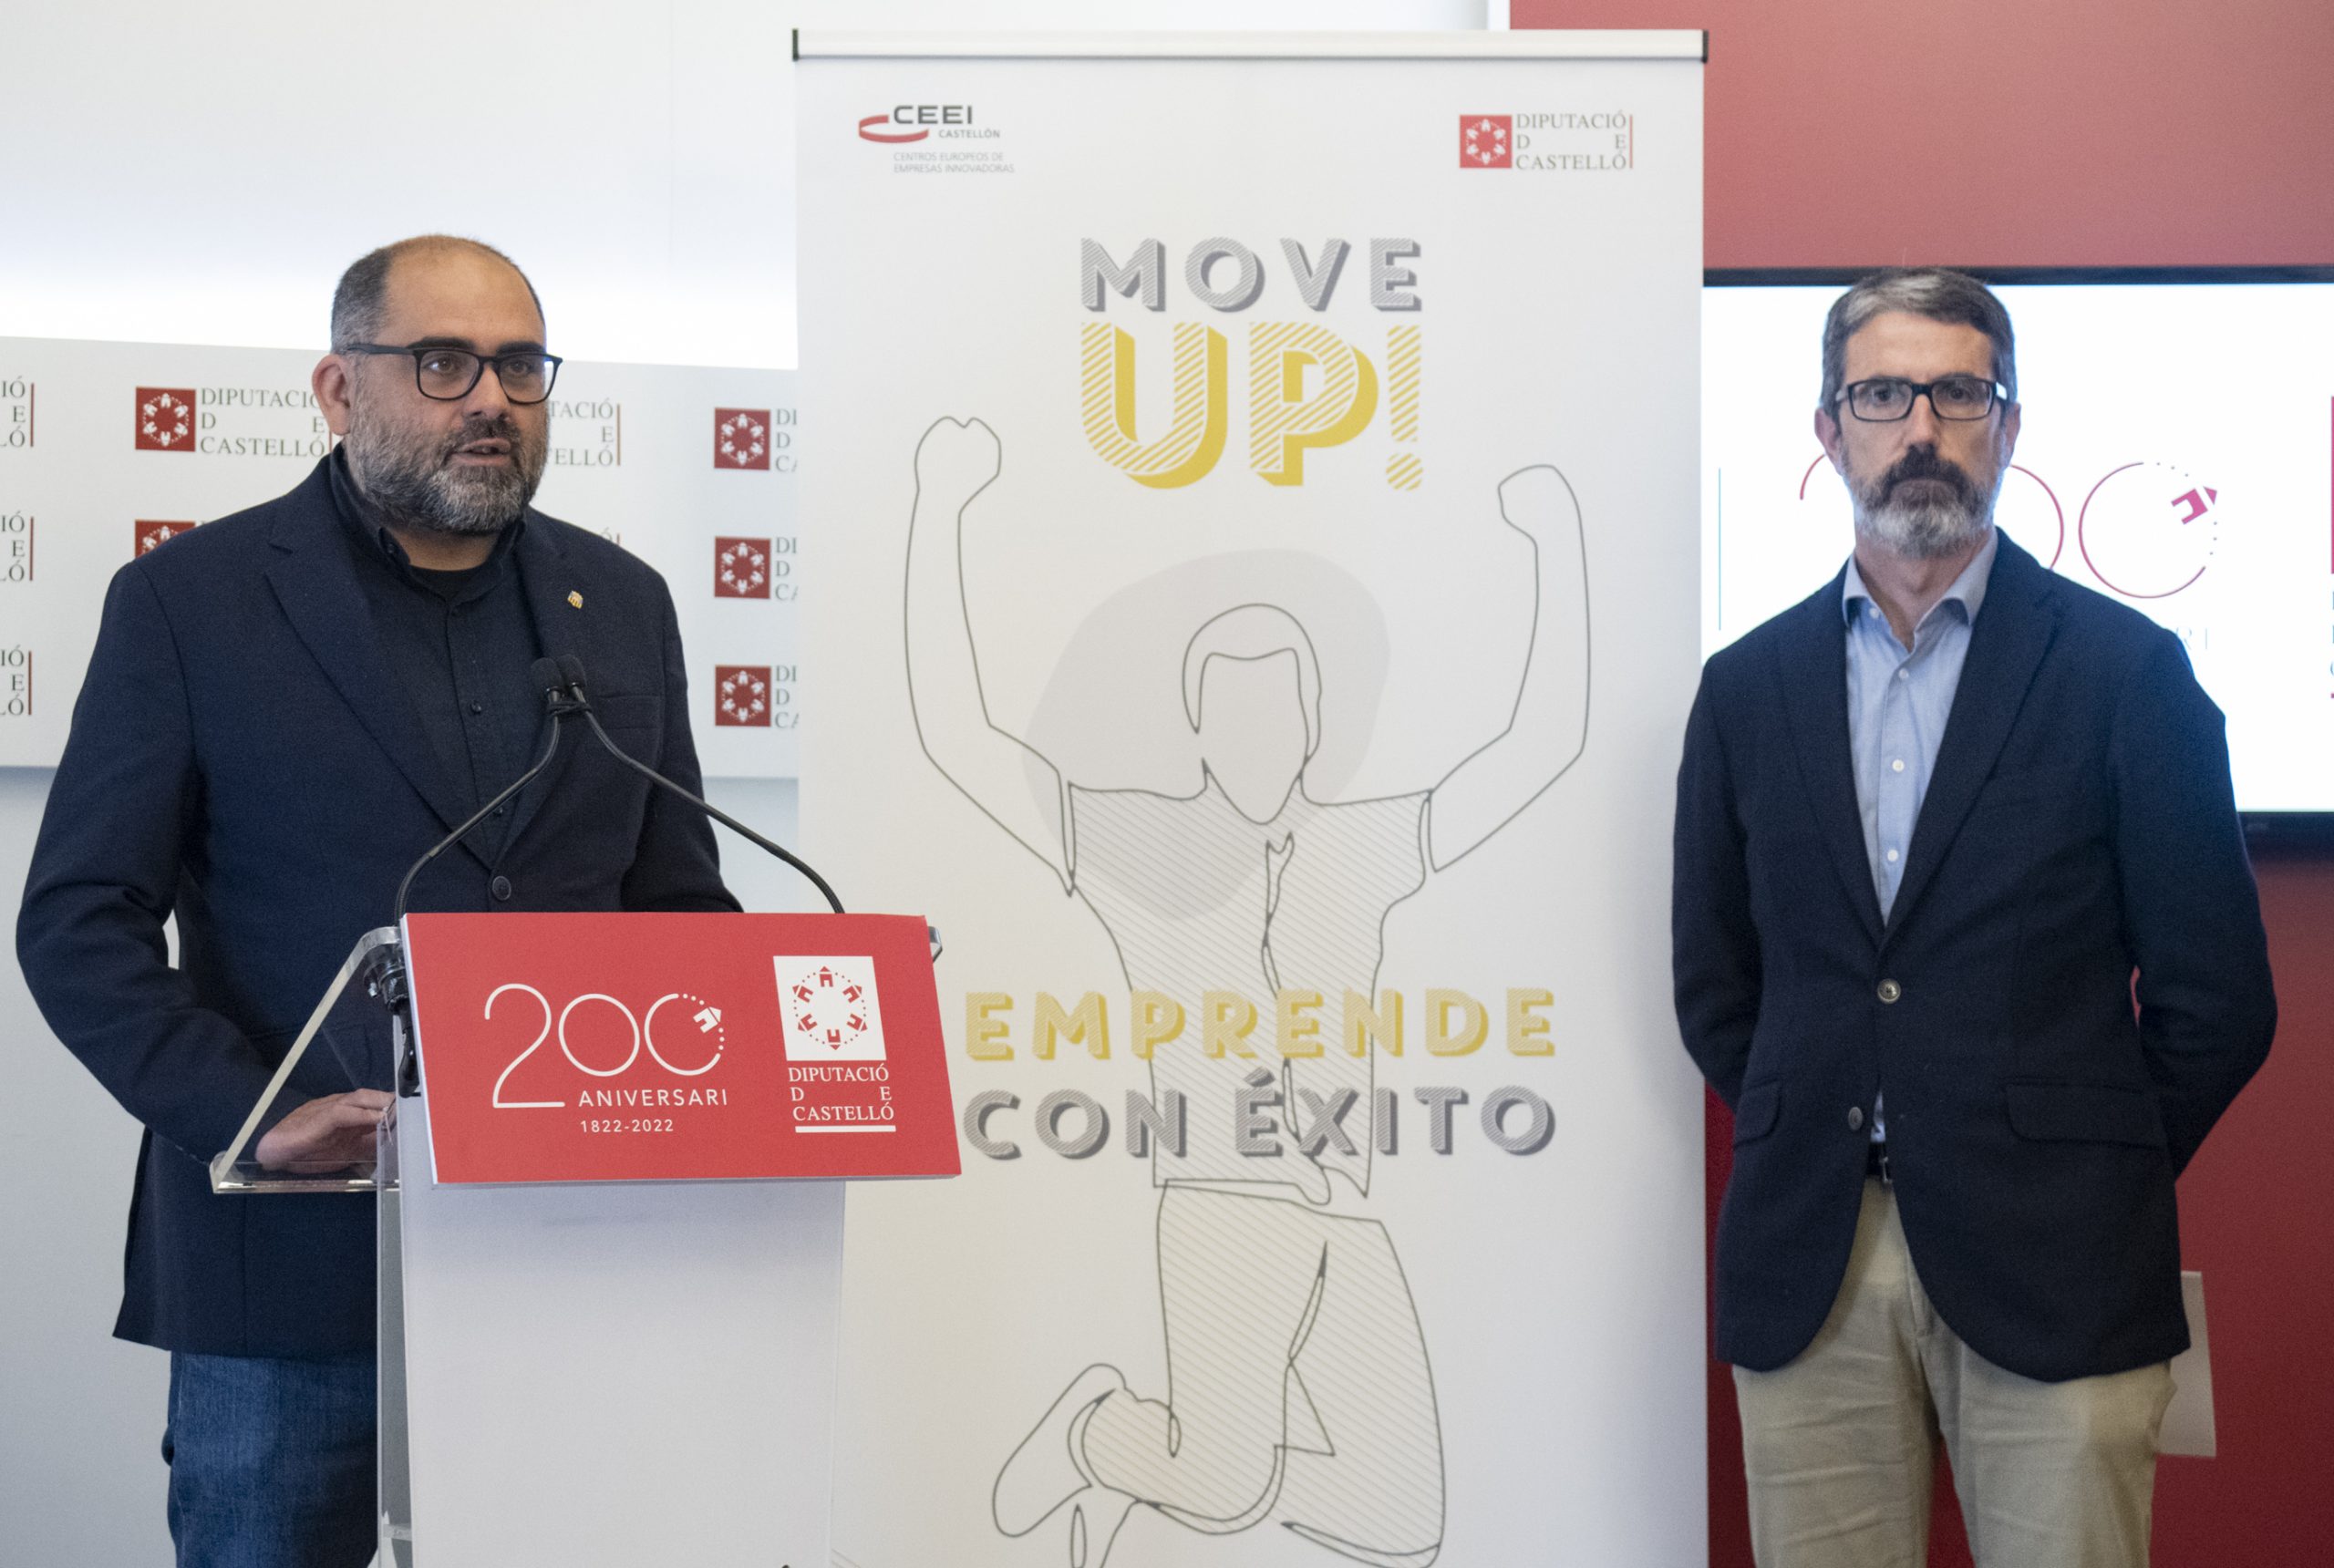 Las jornadas de la Diputación de Castellón de ‘Move Up! Emprende con éxito’ afronta su séptima edición